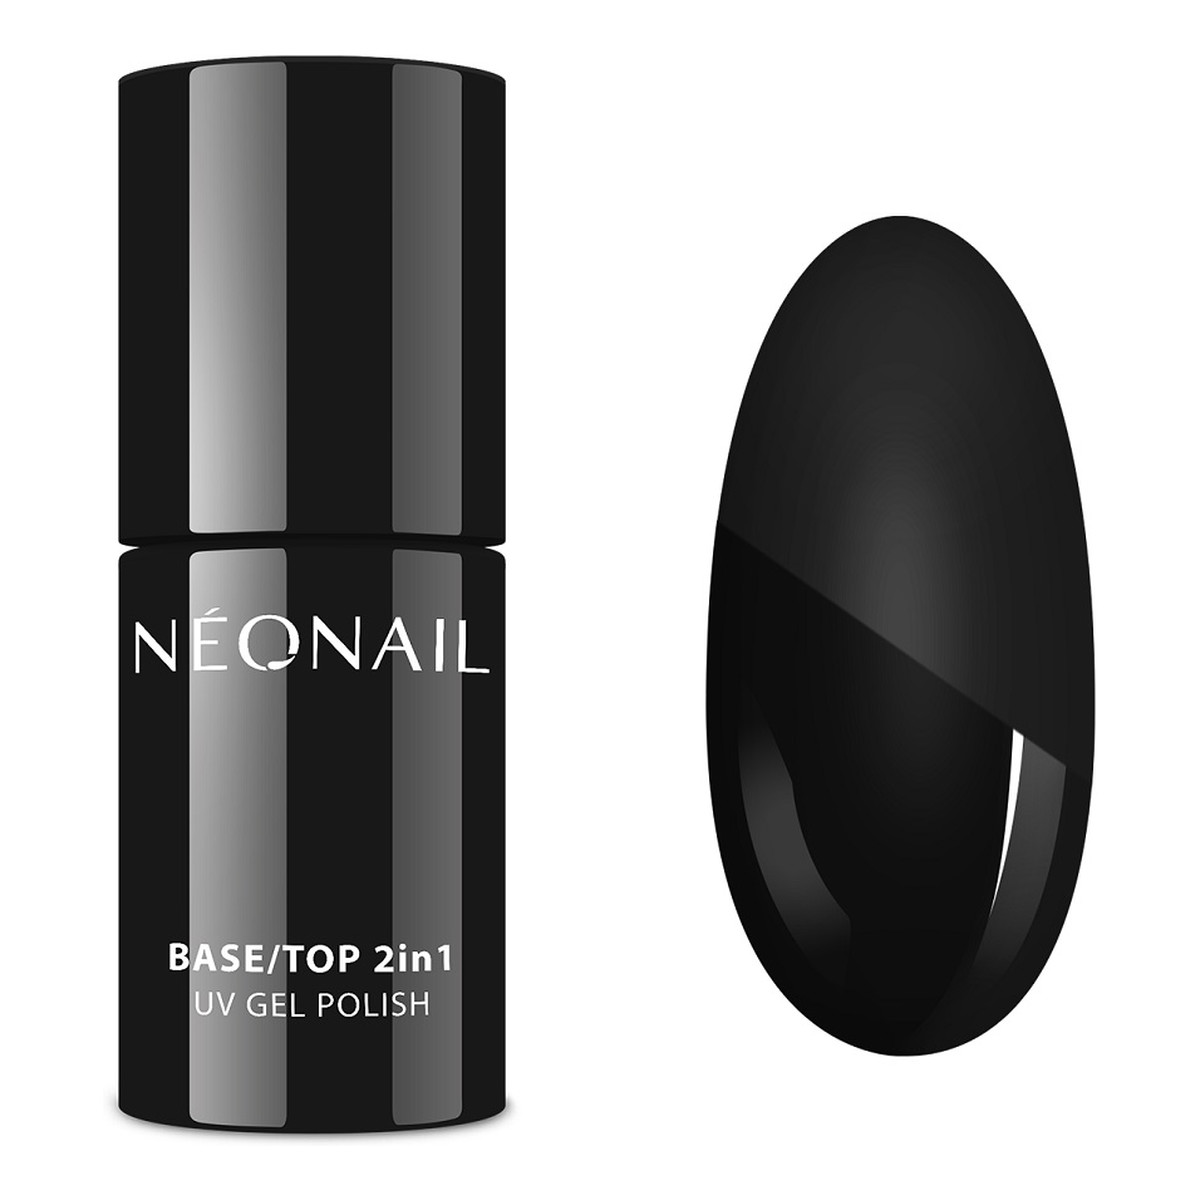 NeoNail UV Gel Polish Base-Top 2in1 Wielofunkcyjny lakier hybrydowy baza i top 7ml